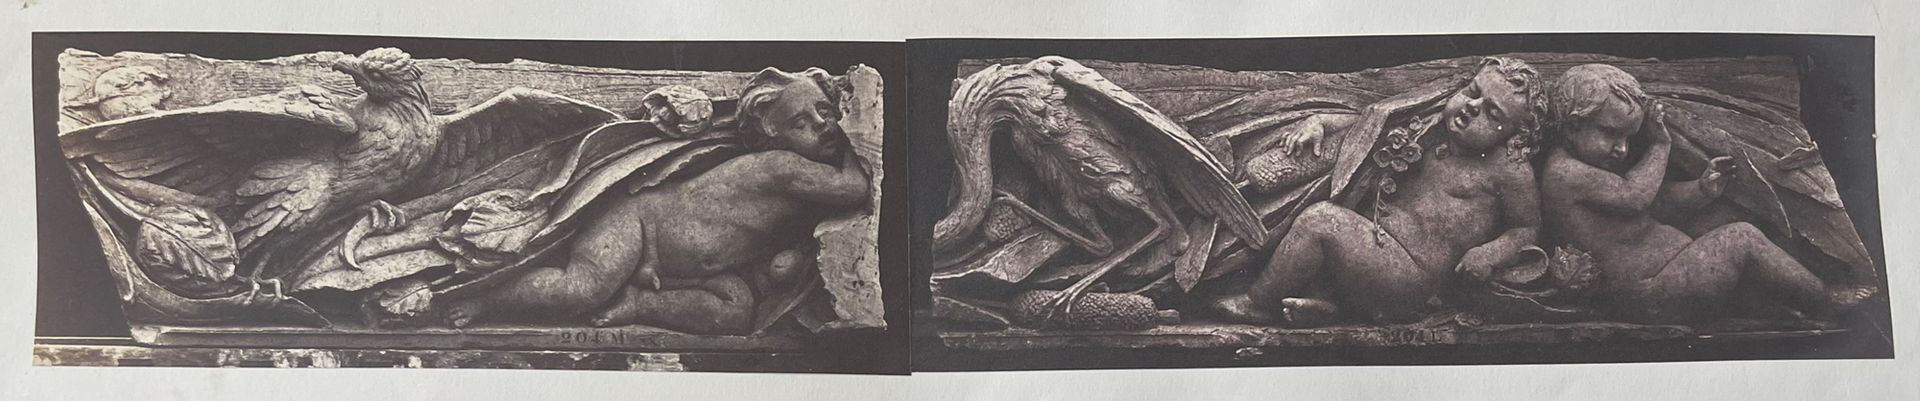 EDOUARD BALDUS (1813-1889) 
Le combat de l'oiseau et du serpent, decorative scul&hellip;